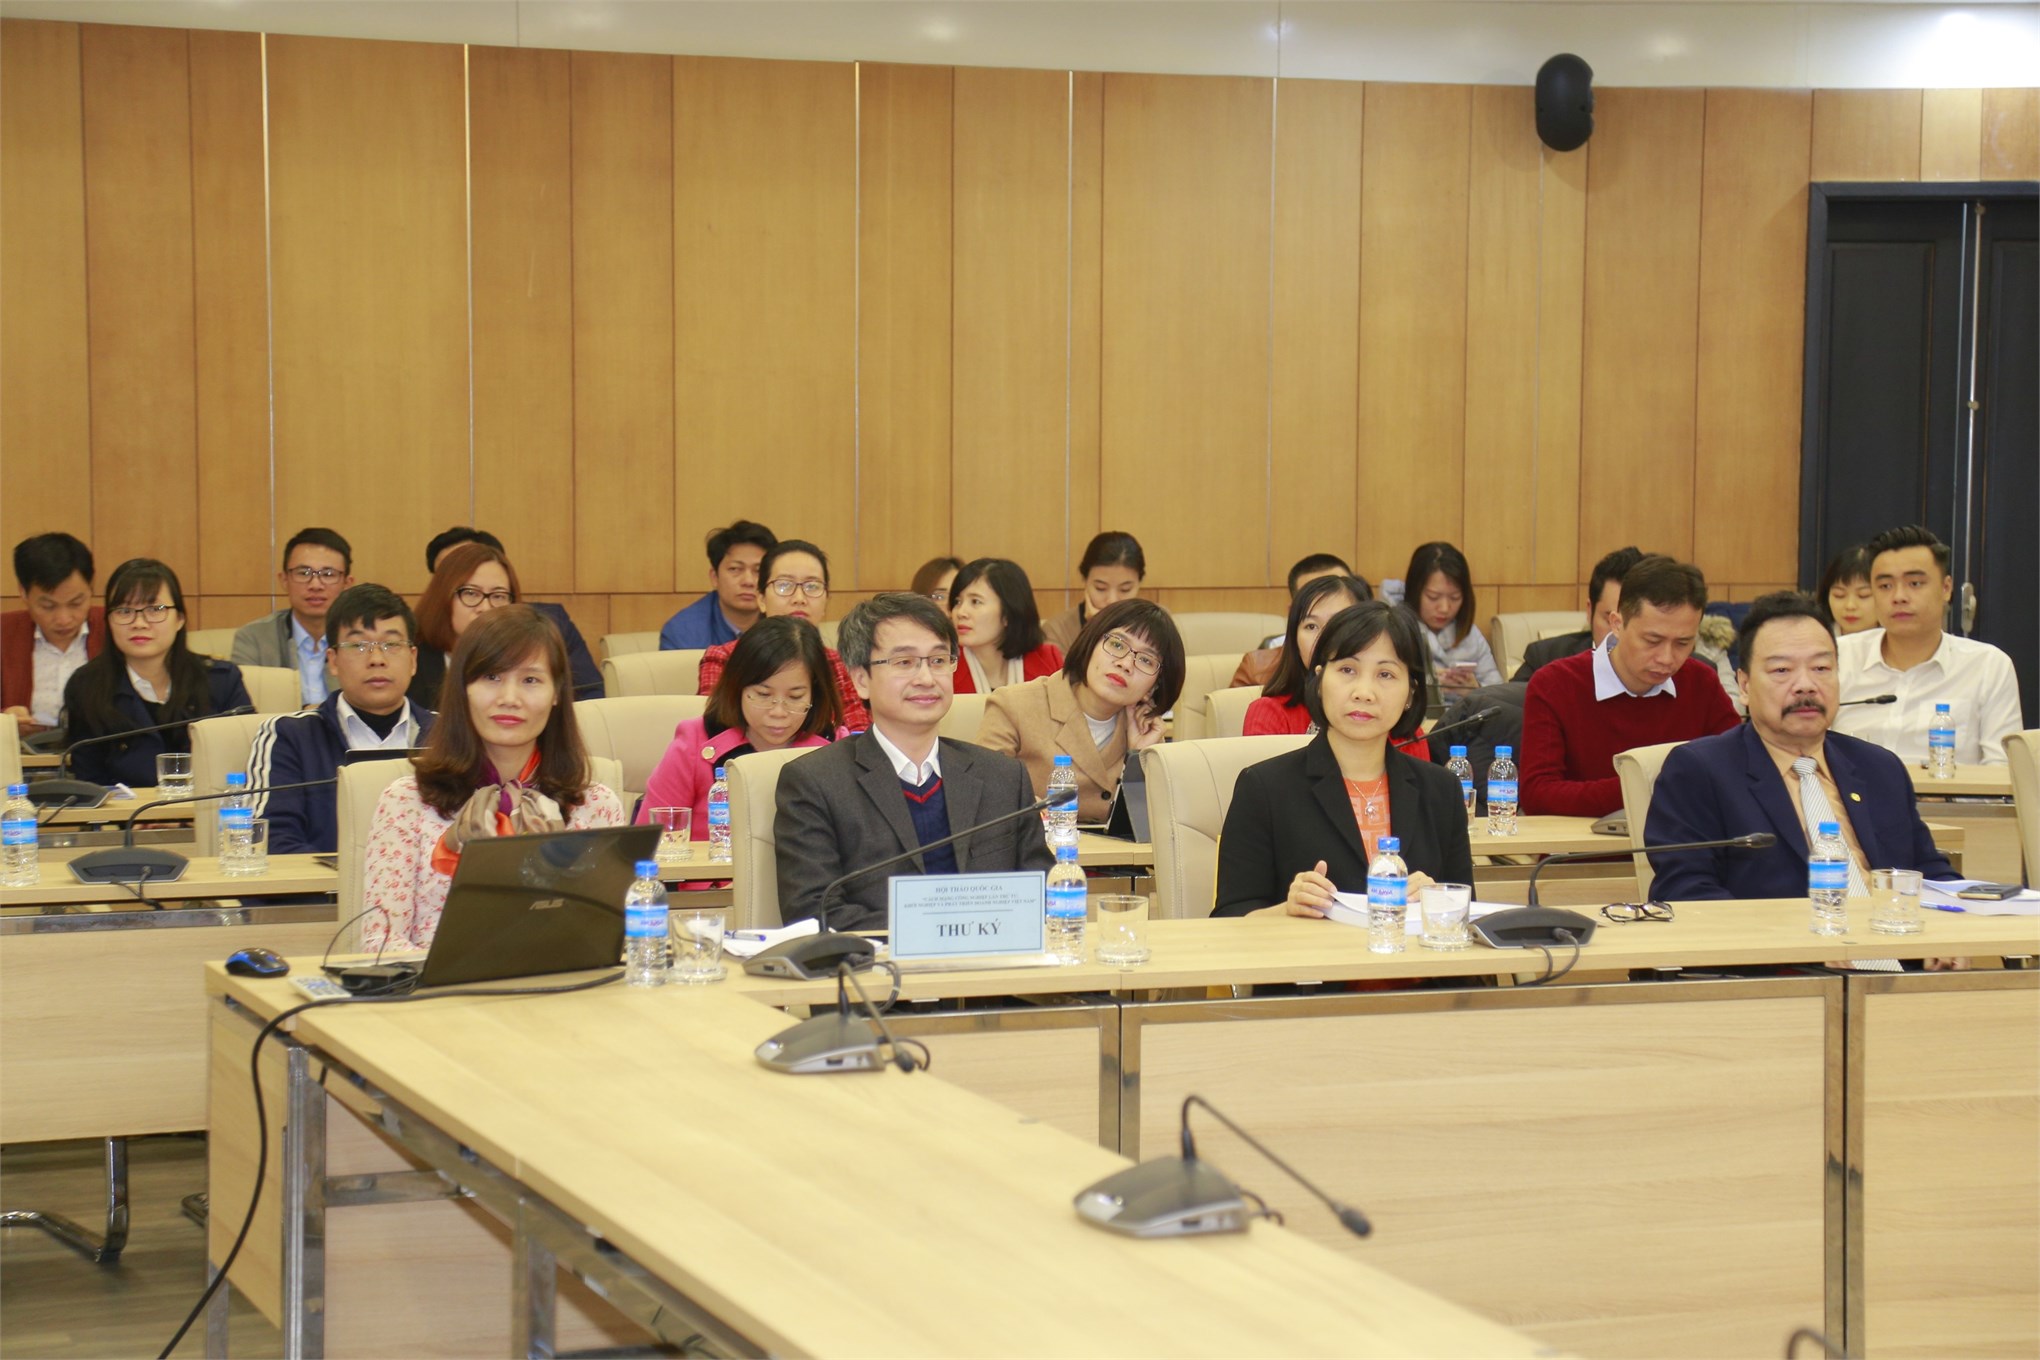 Hội thảo khoa học quốc gia “Cách mạng công nghiệp lần thứ tư: Khởi nghiệp và phát triển doanh nghiệp Việt Nam”